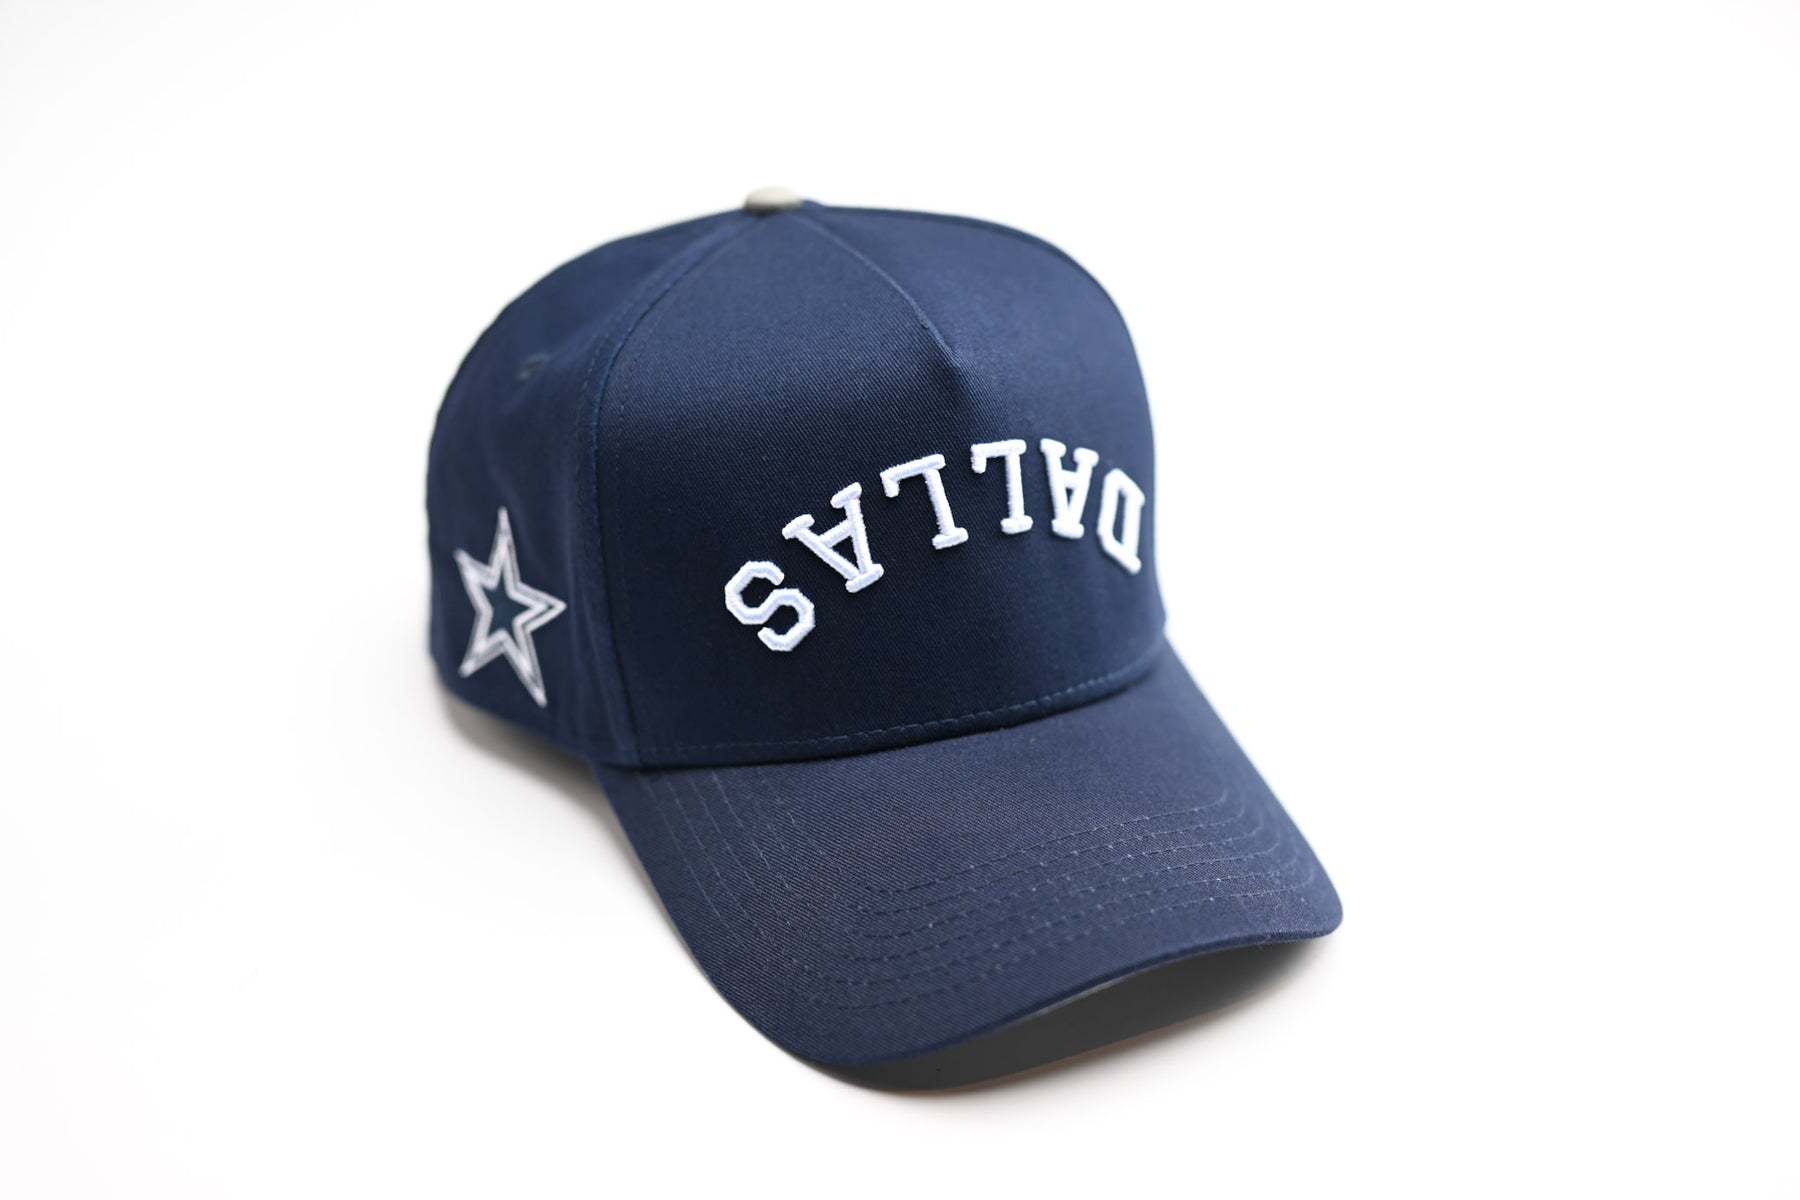 Accessories, True Brand Dallas Hat